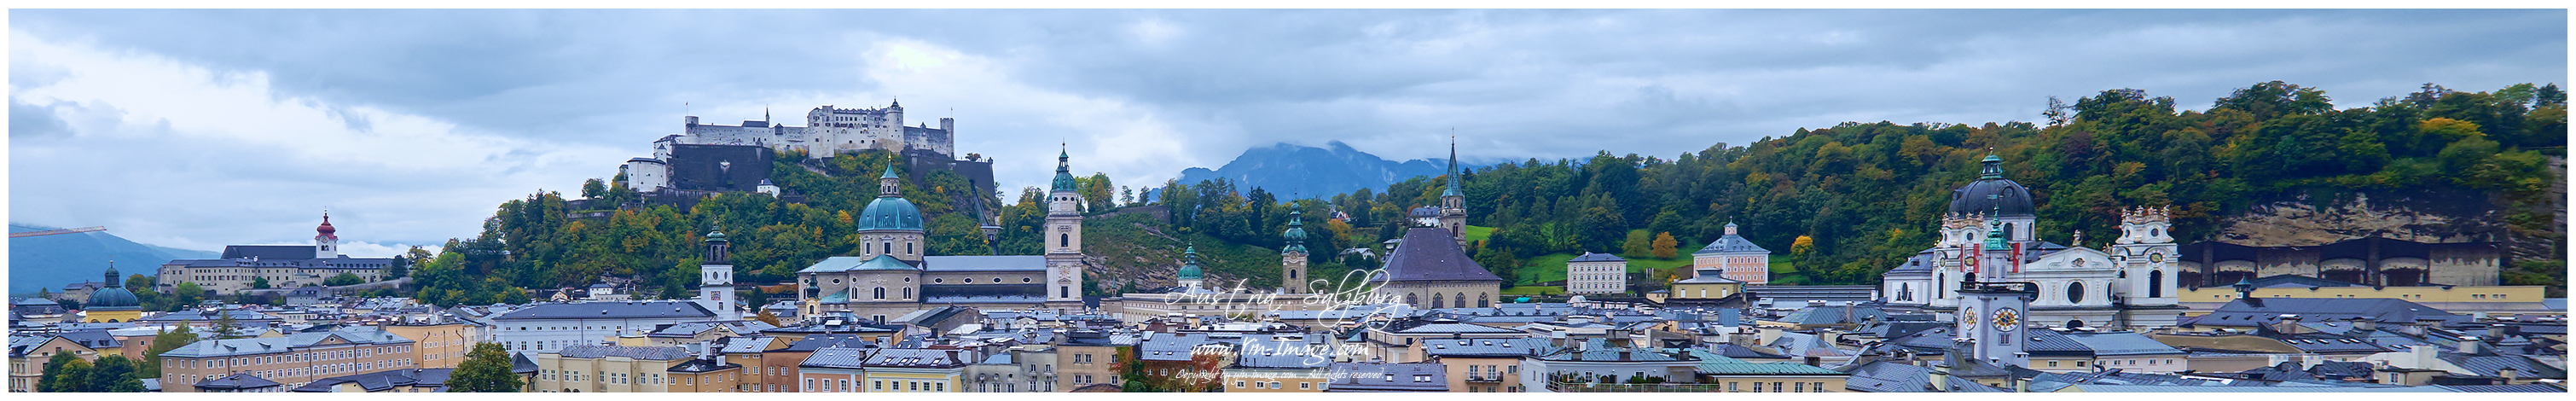 Salzburg_DSF8936-Panorama